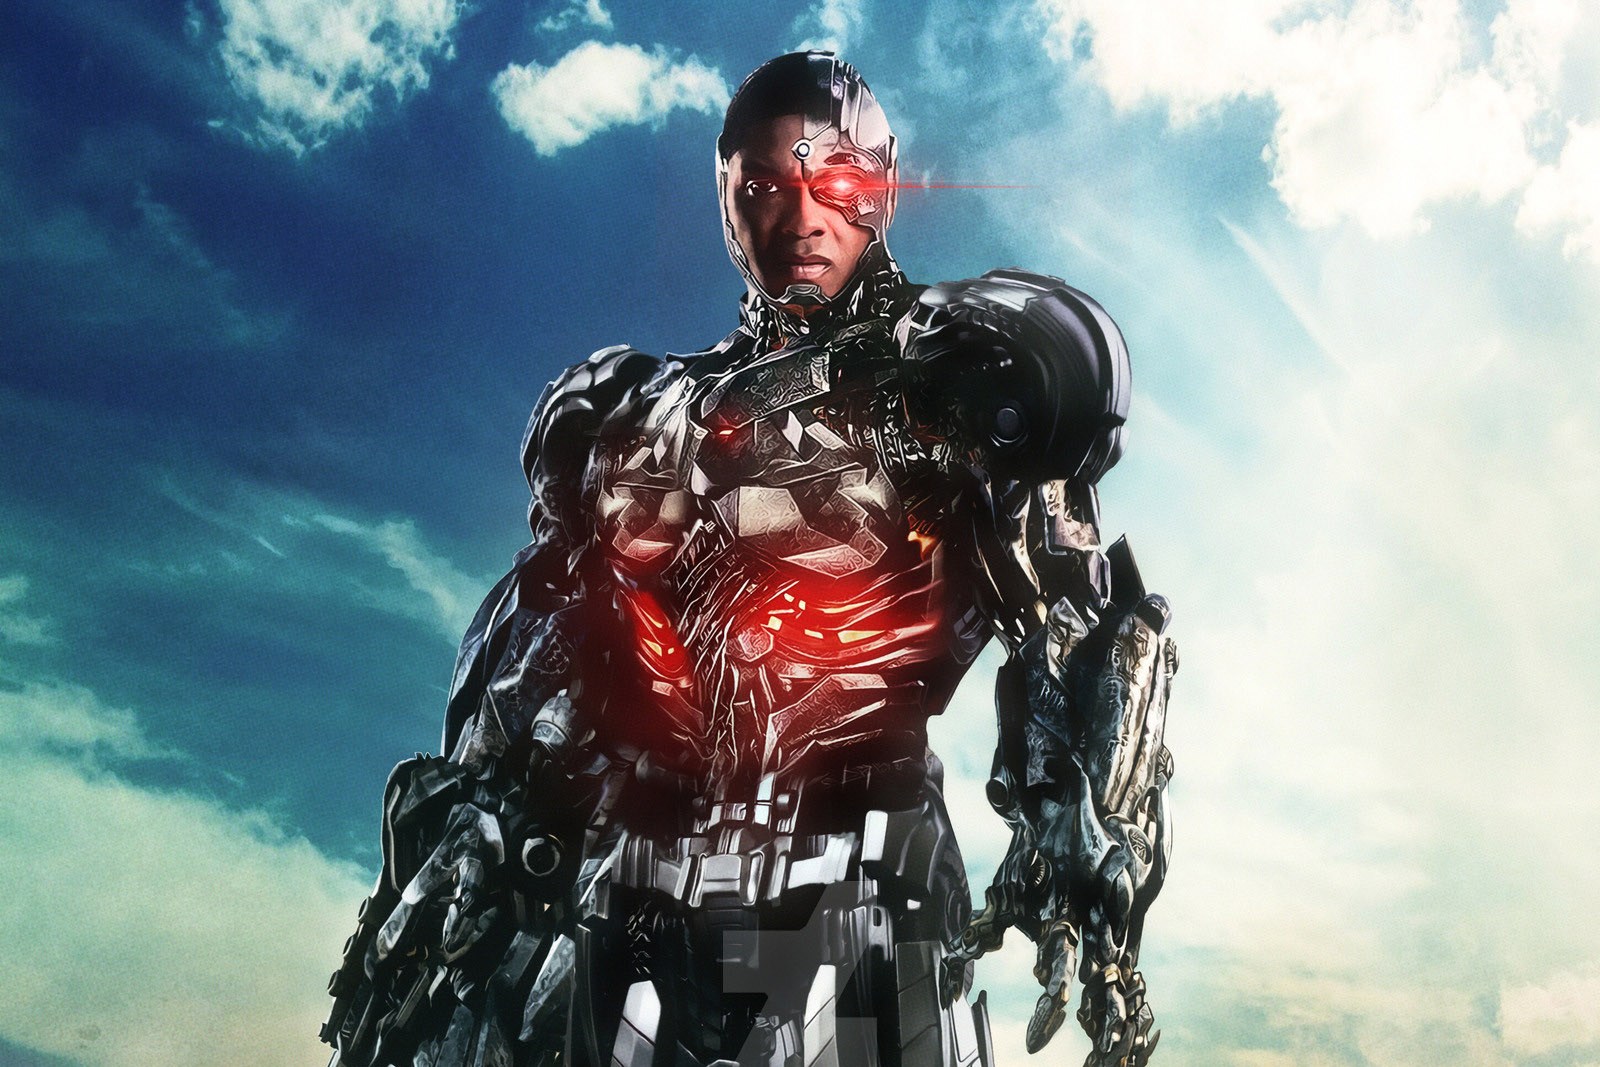 《正义联盟》重拍部份将调整 Cyborg 人物设定与电影调性